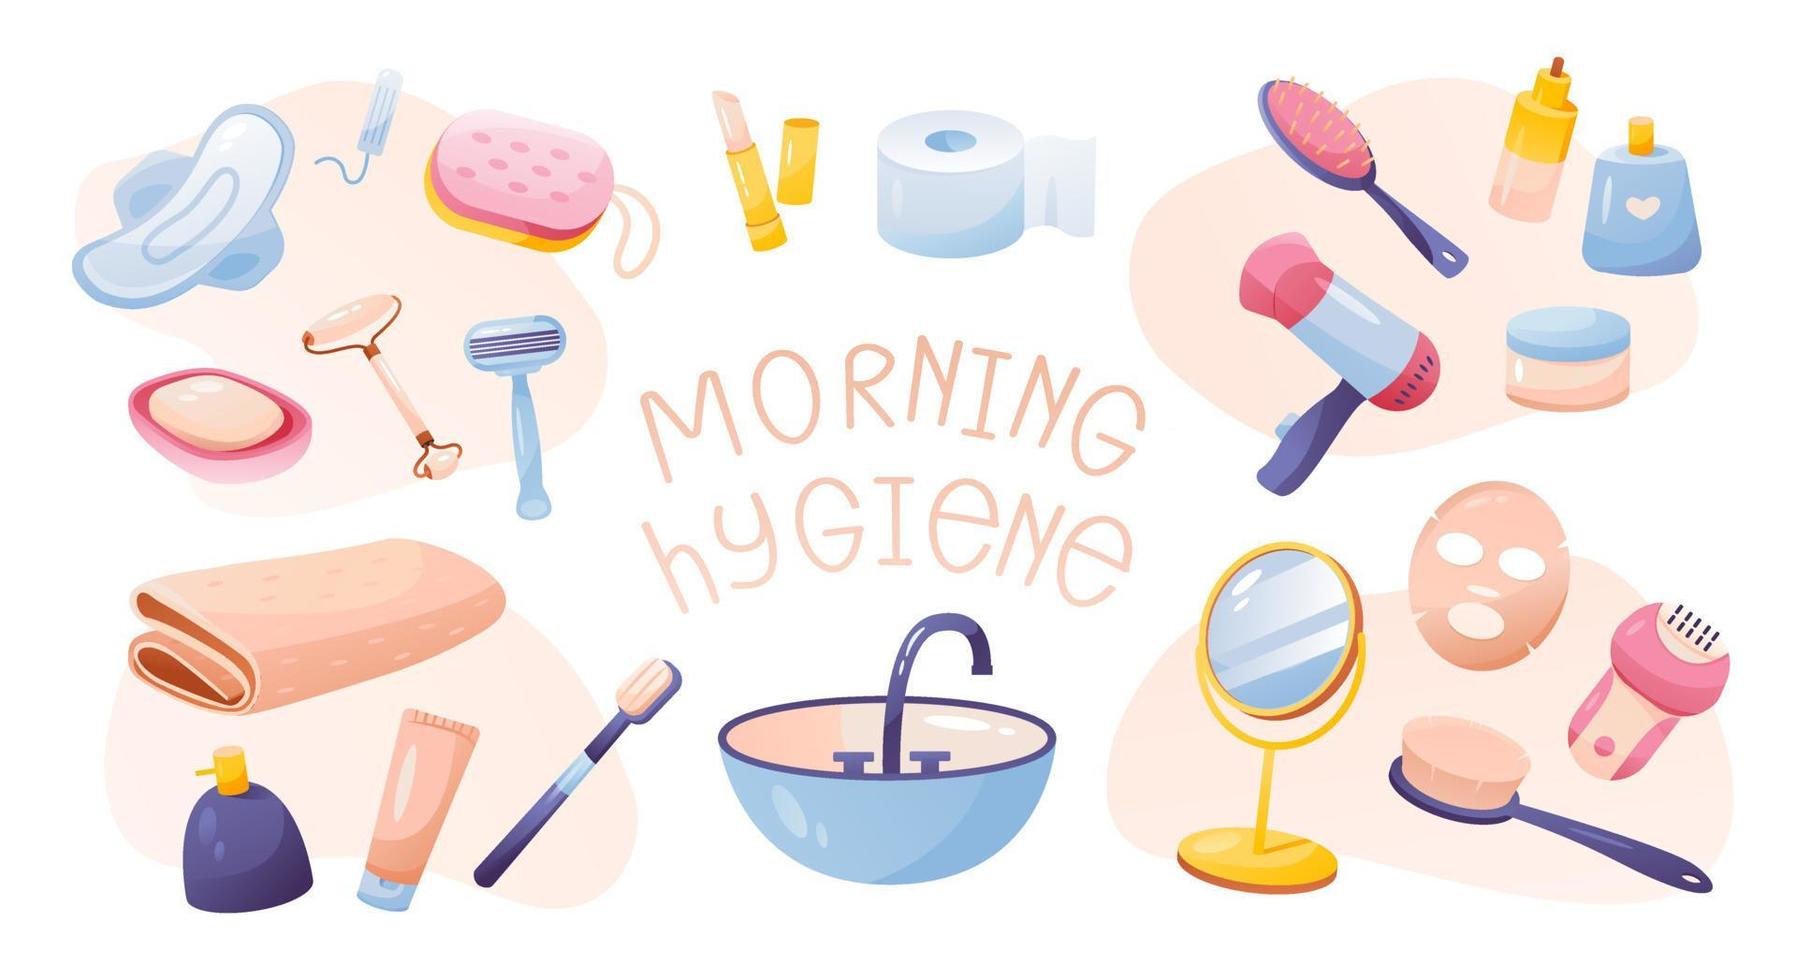 ochtendhygiëne collectie. een set items voor vrouwelijke ochtendhygiëne. zelfzorg thuis. cartoon vectorillustratie. vector